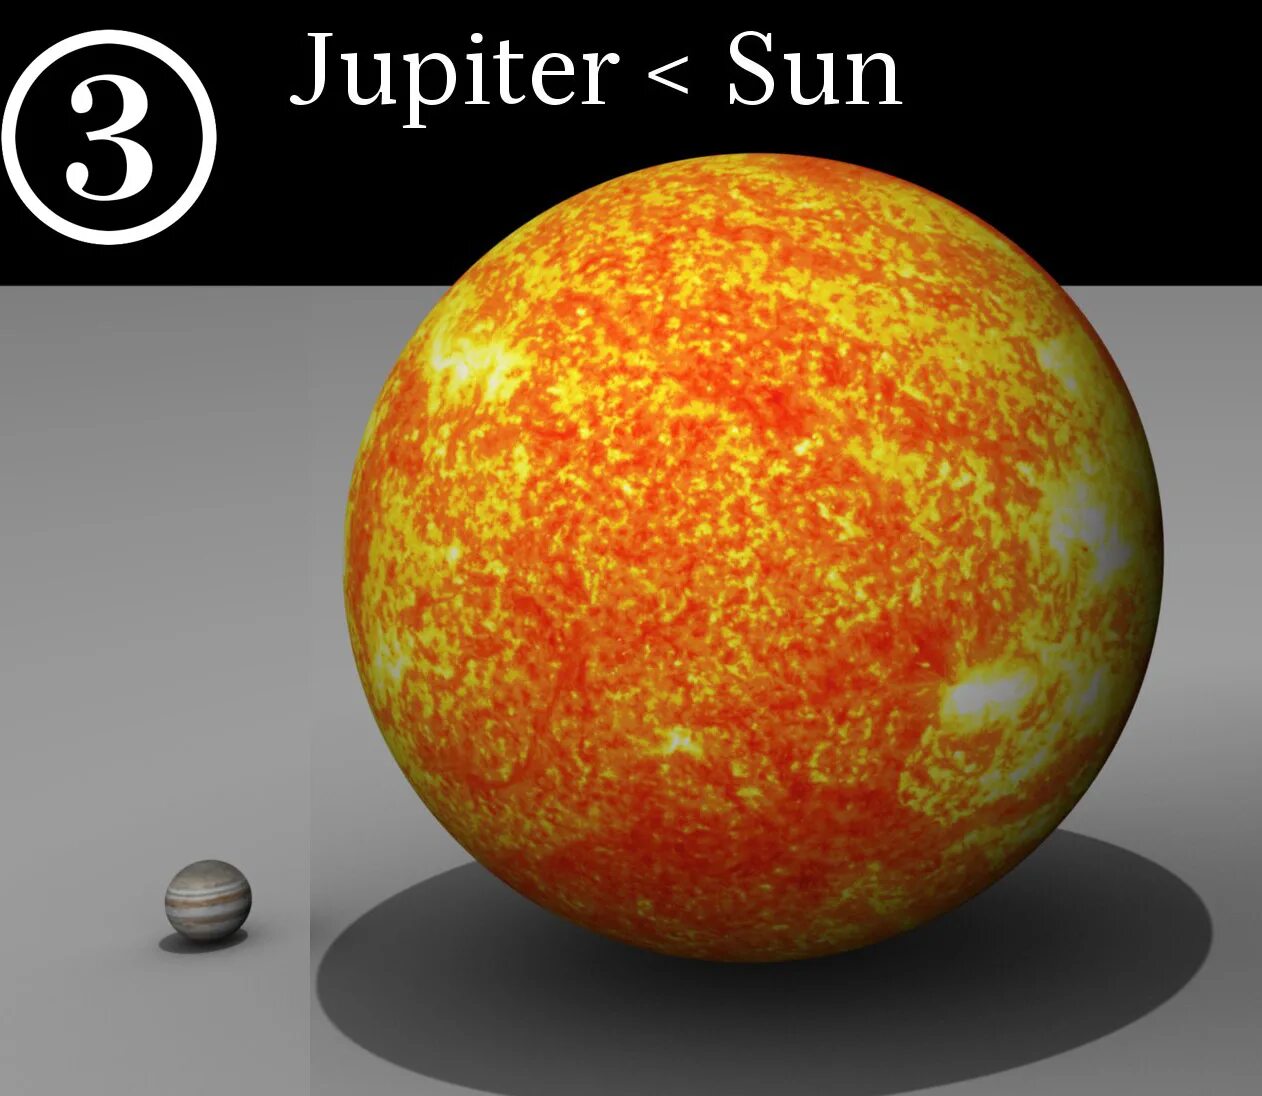 Сравнение размеров юпитера. Юпитер и солнце. Юпитер и земля сравнение размеров. Что больше Юпитер или солнце. Юпитер и солнце сравнение.